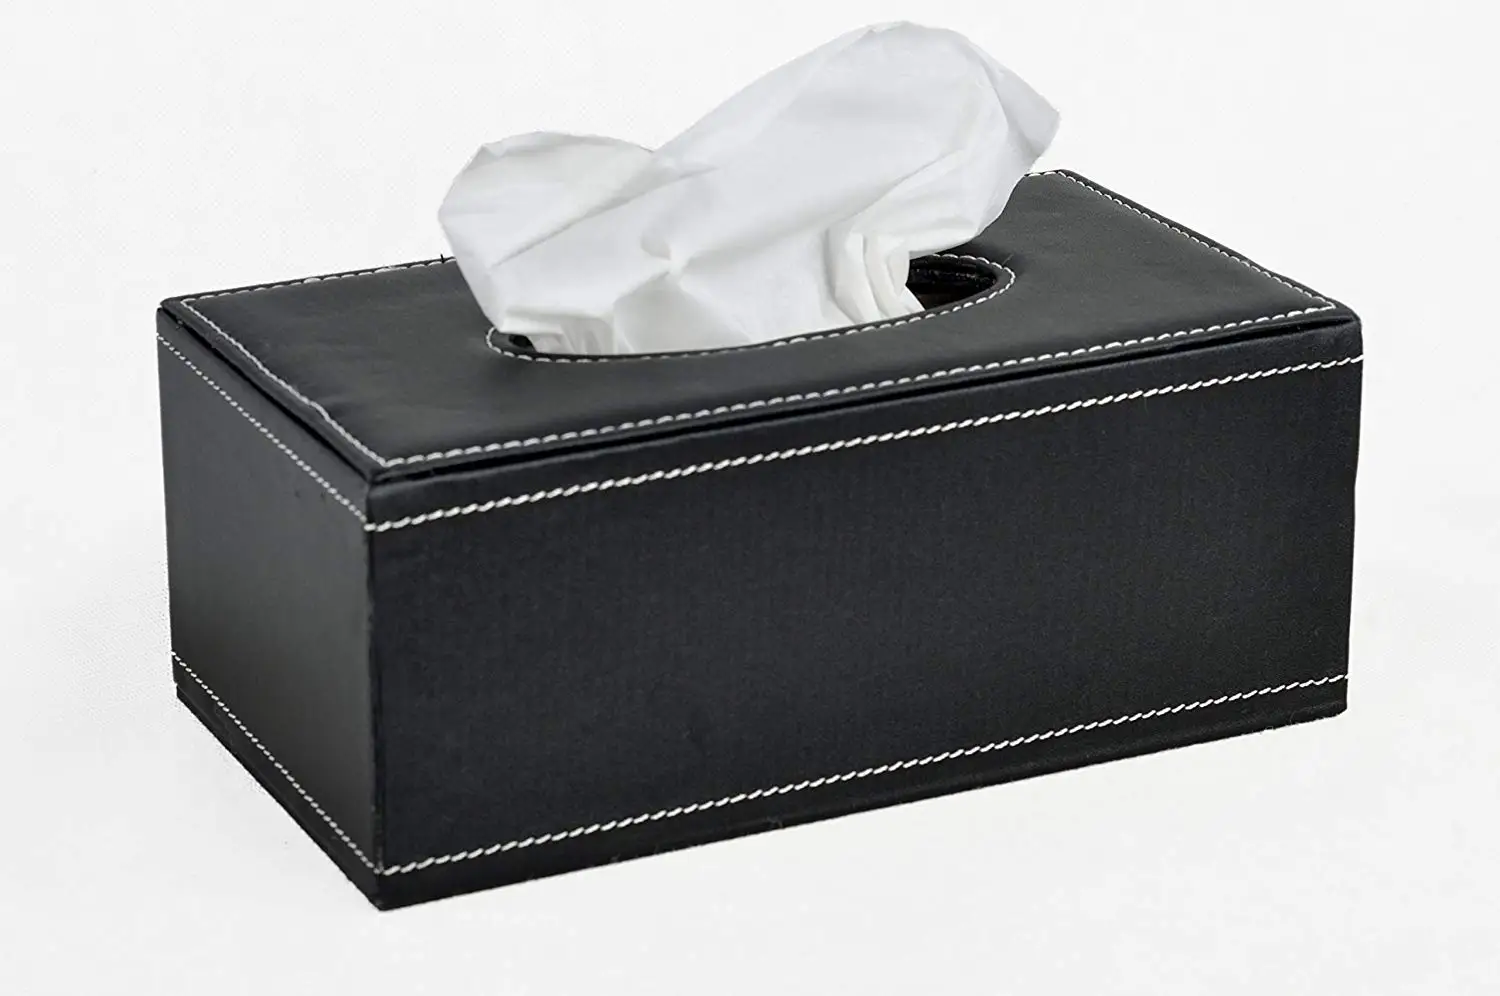 tissue box dimensions